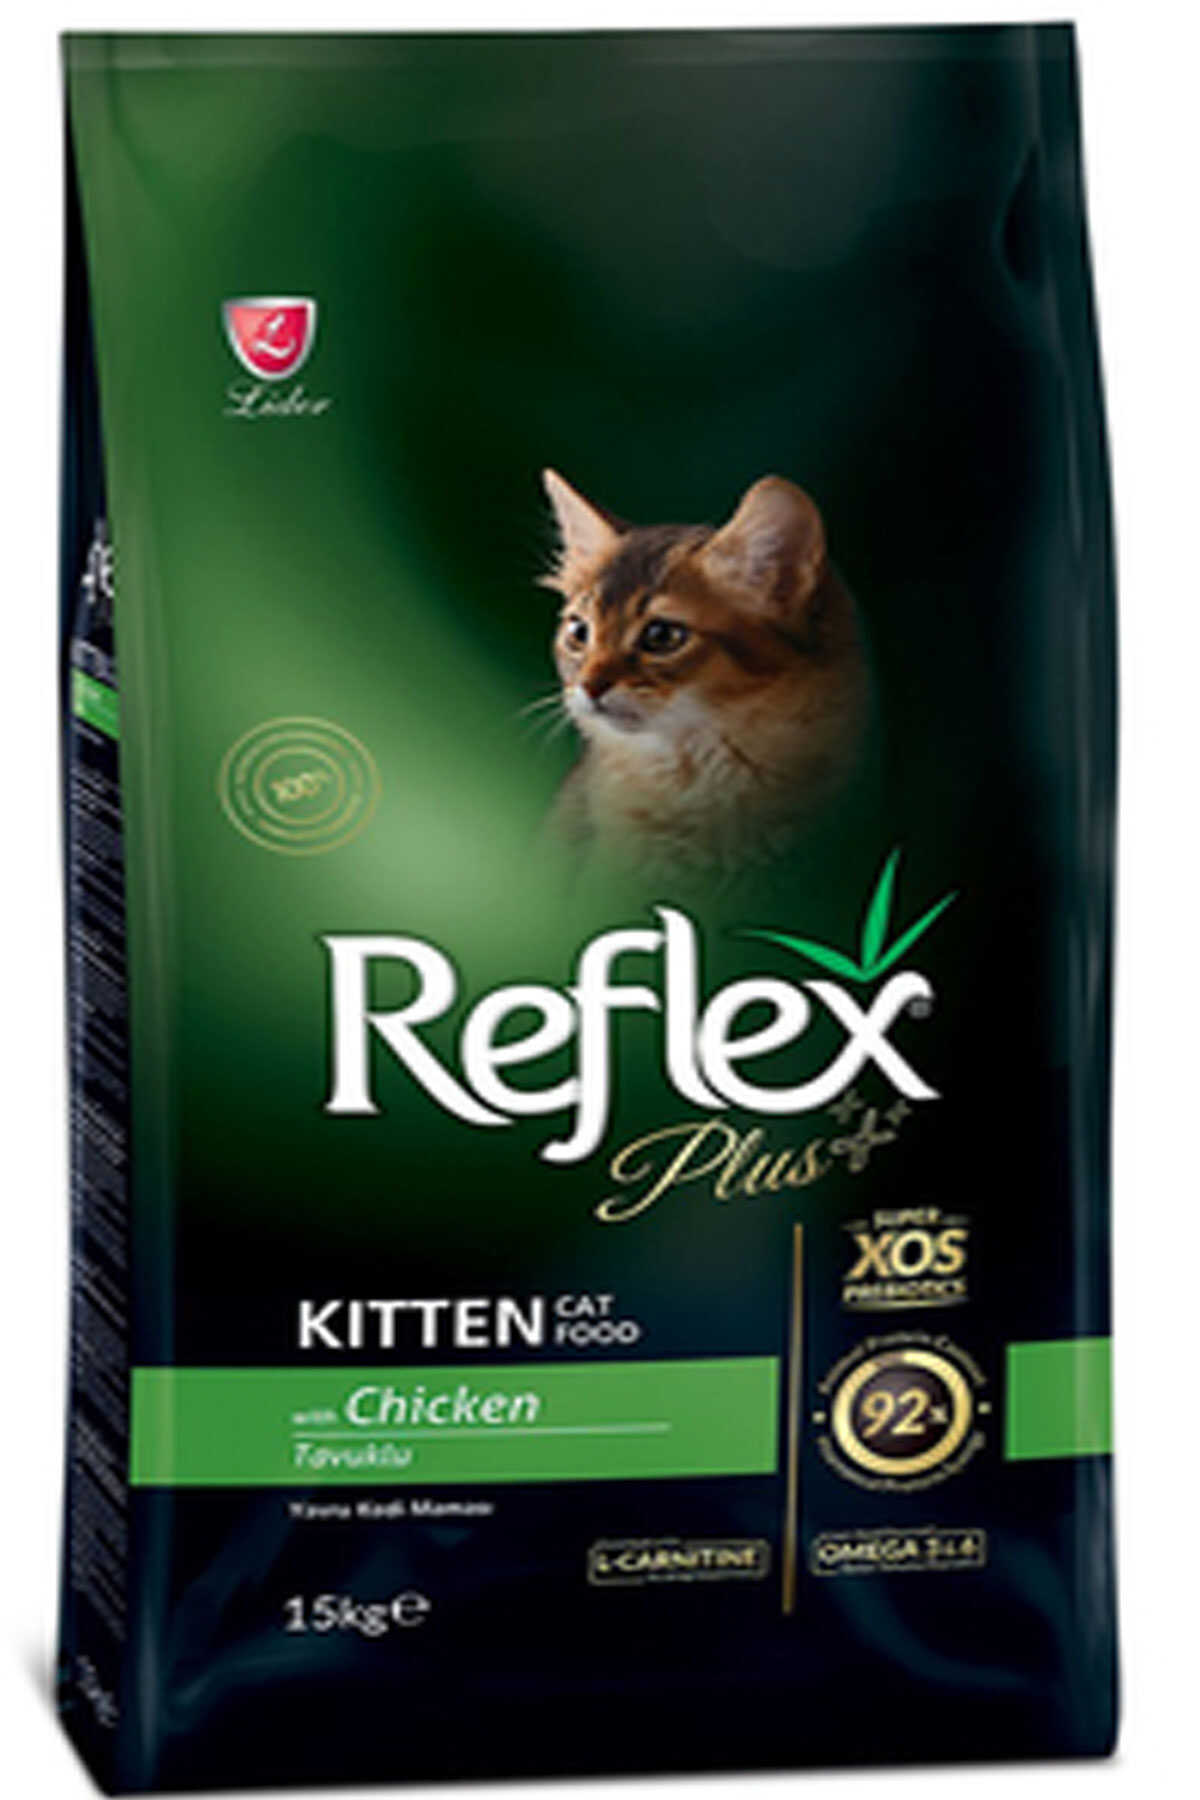 Reflex Plus Kitten Tavuklu Yavru Kedi Maması 15kg